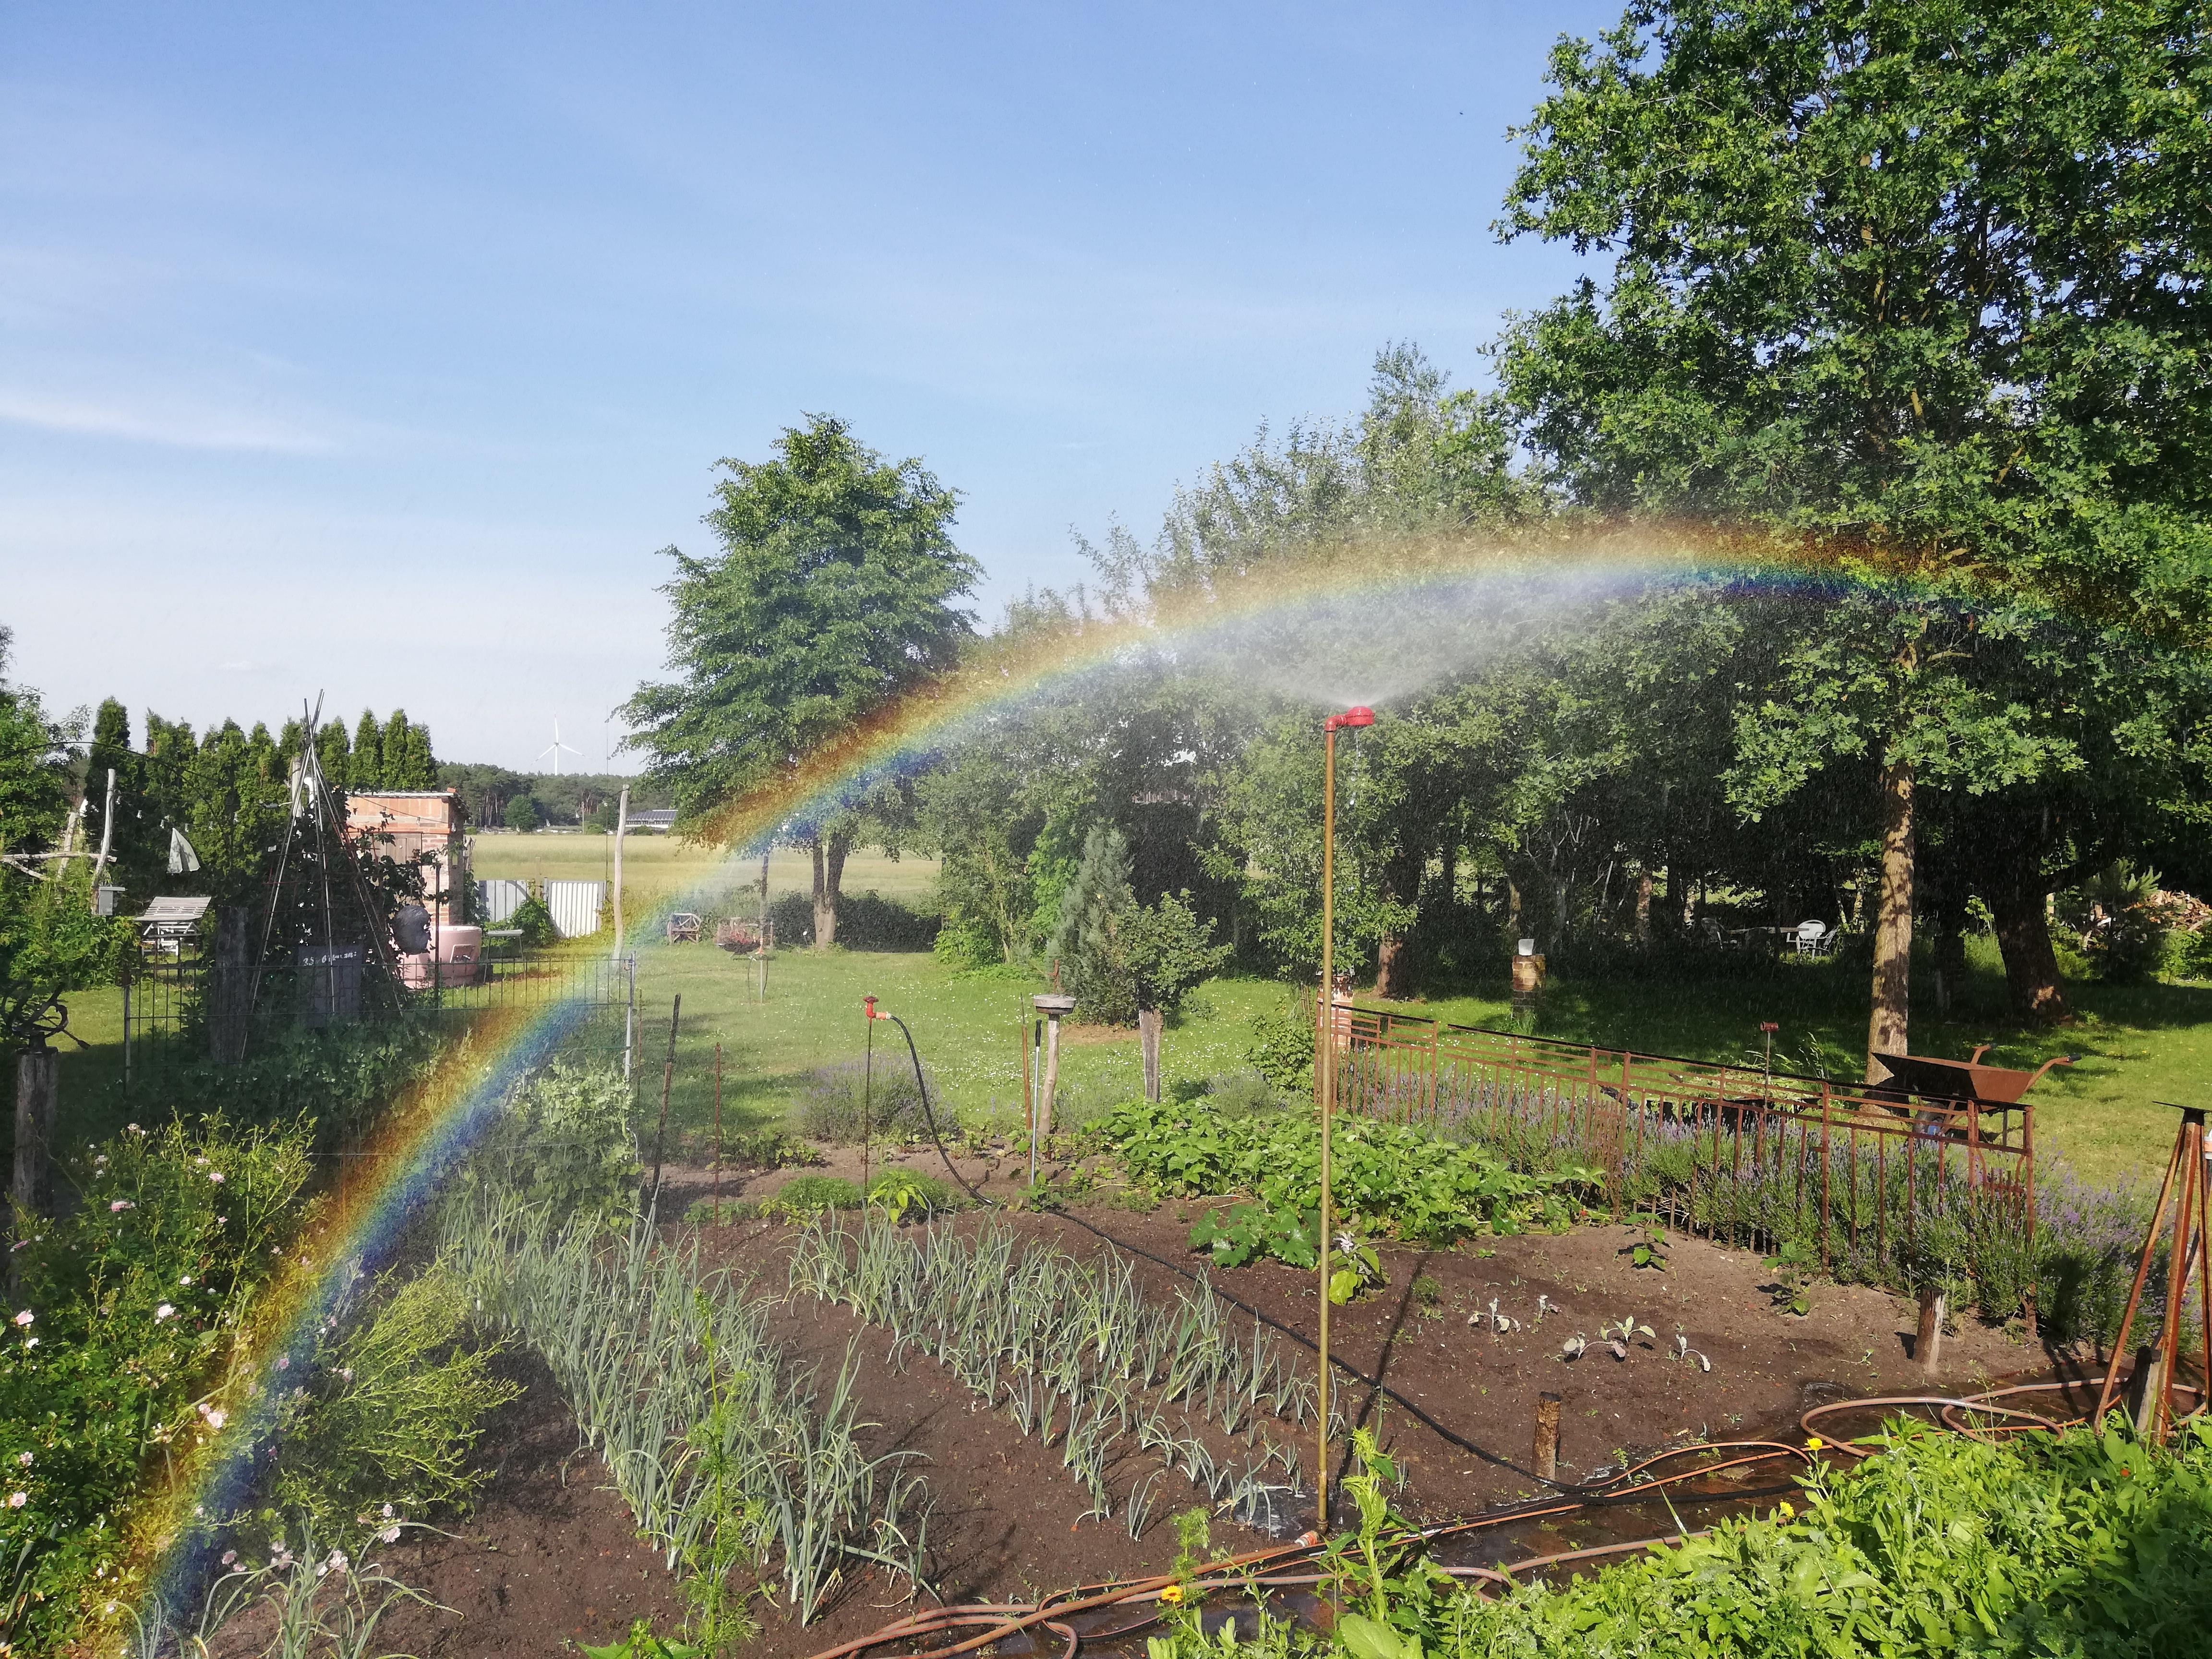 #Summer #garden #rainbow 